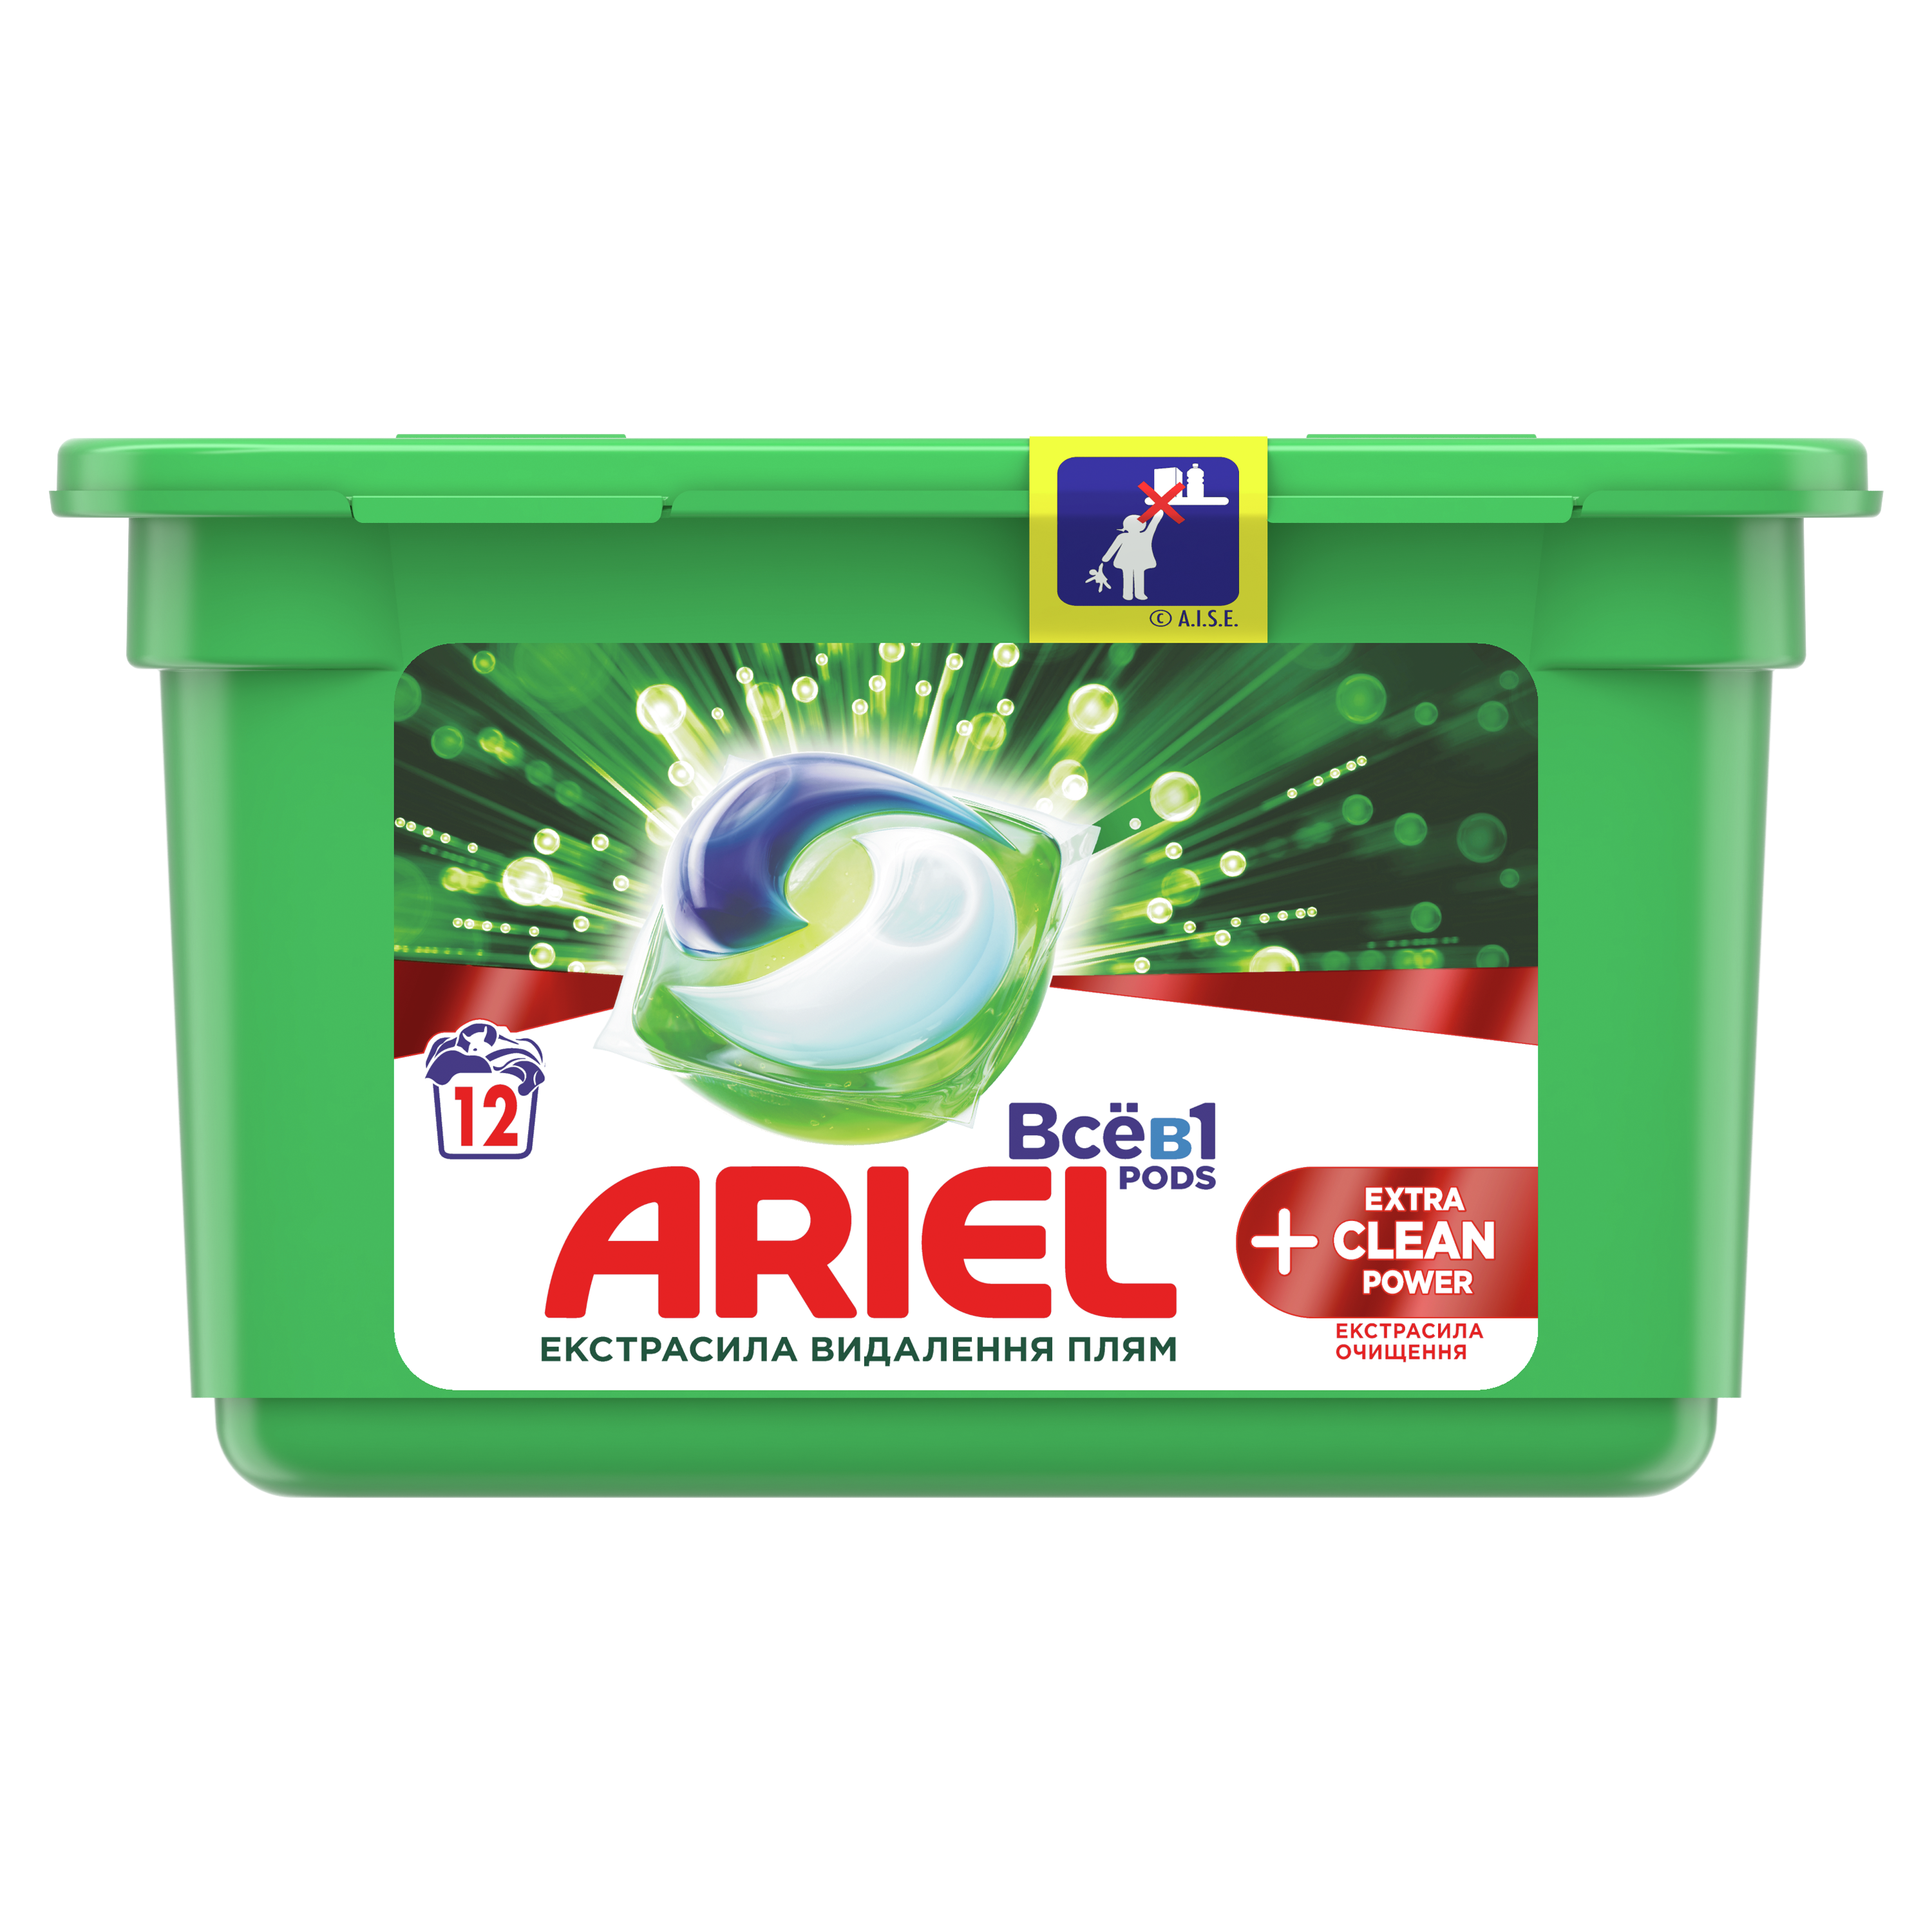 Капсулы для стирки Ariel Pods Все-в-1 + Экстра OXI Effect, 12 шт (81763738) - фото 1